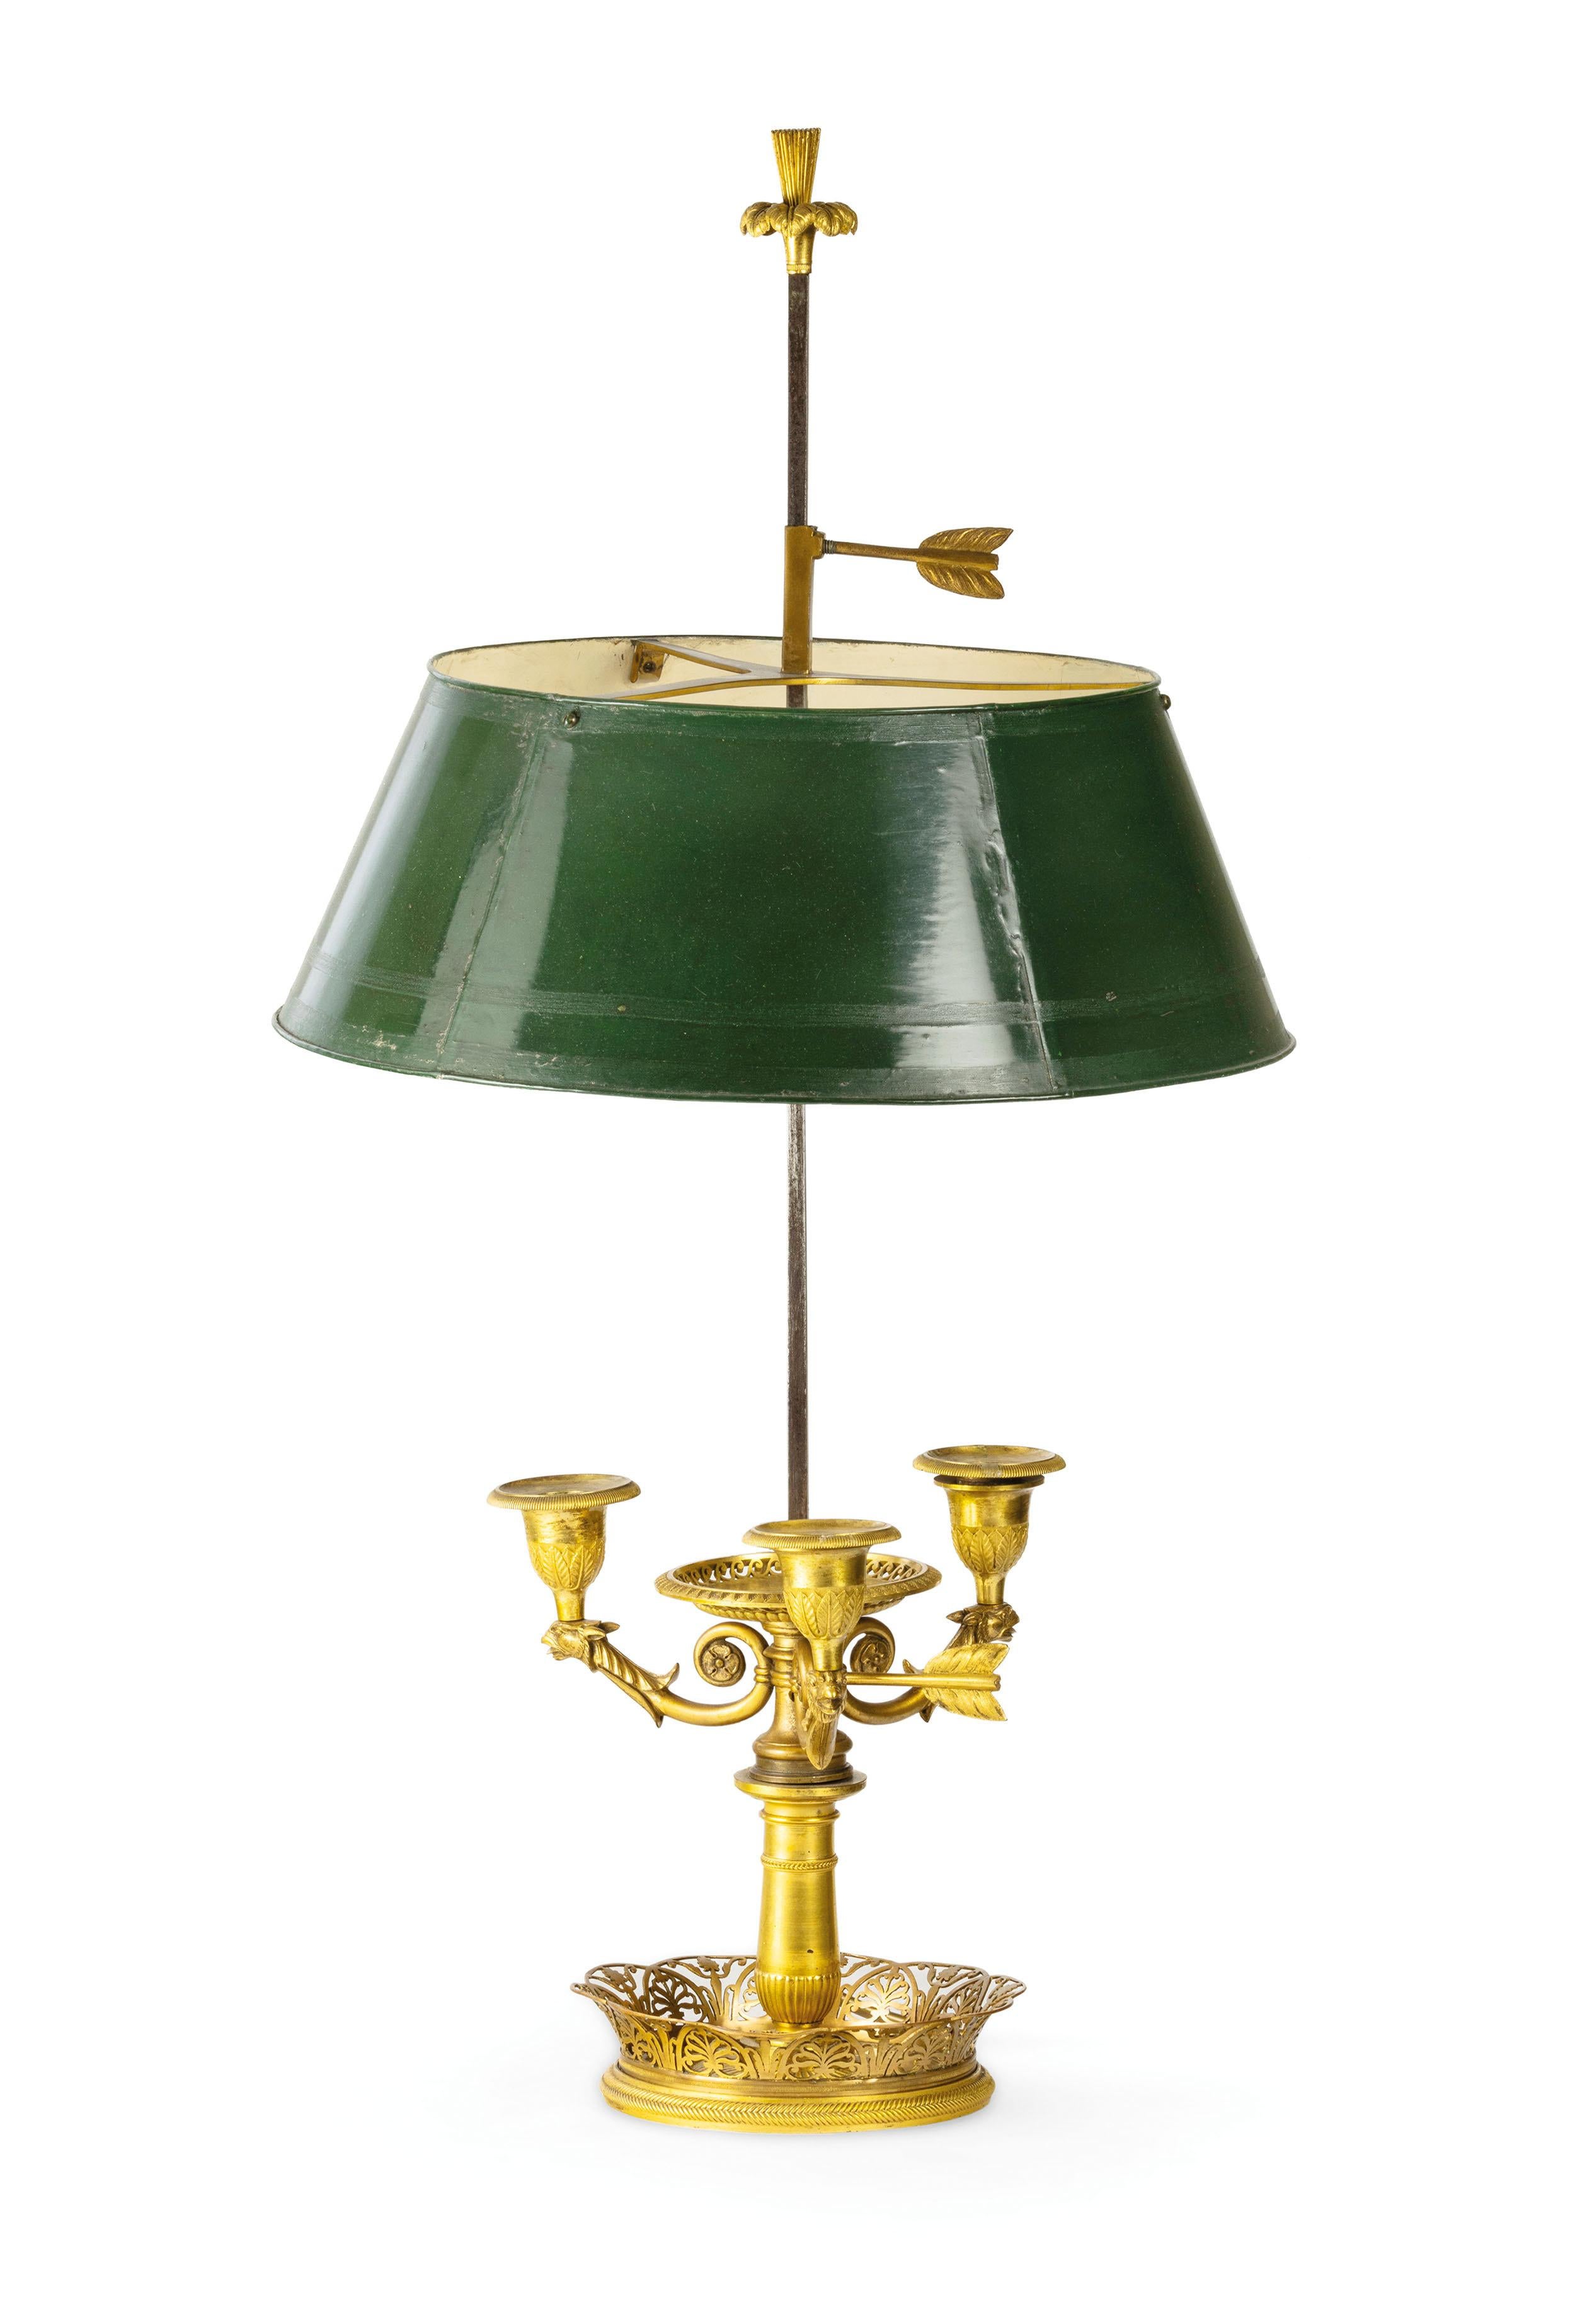 19. Jahrhundert, Französisch vergoldete Bronze Buillotte Lampe 
Diese elegante Tischlampe Modell Buillotte wurde in Frankreich im frühen neunzehnten Jahrhundert, klassischen Geschmack mit dekorativen Elementen Empire gemacht. Die Struktur ist aus